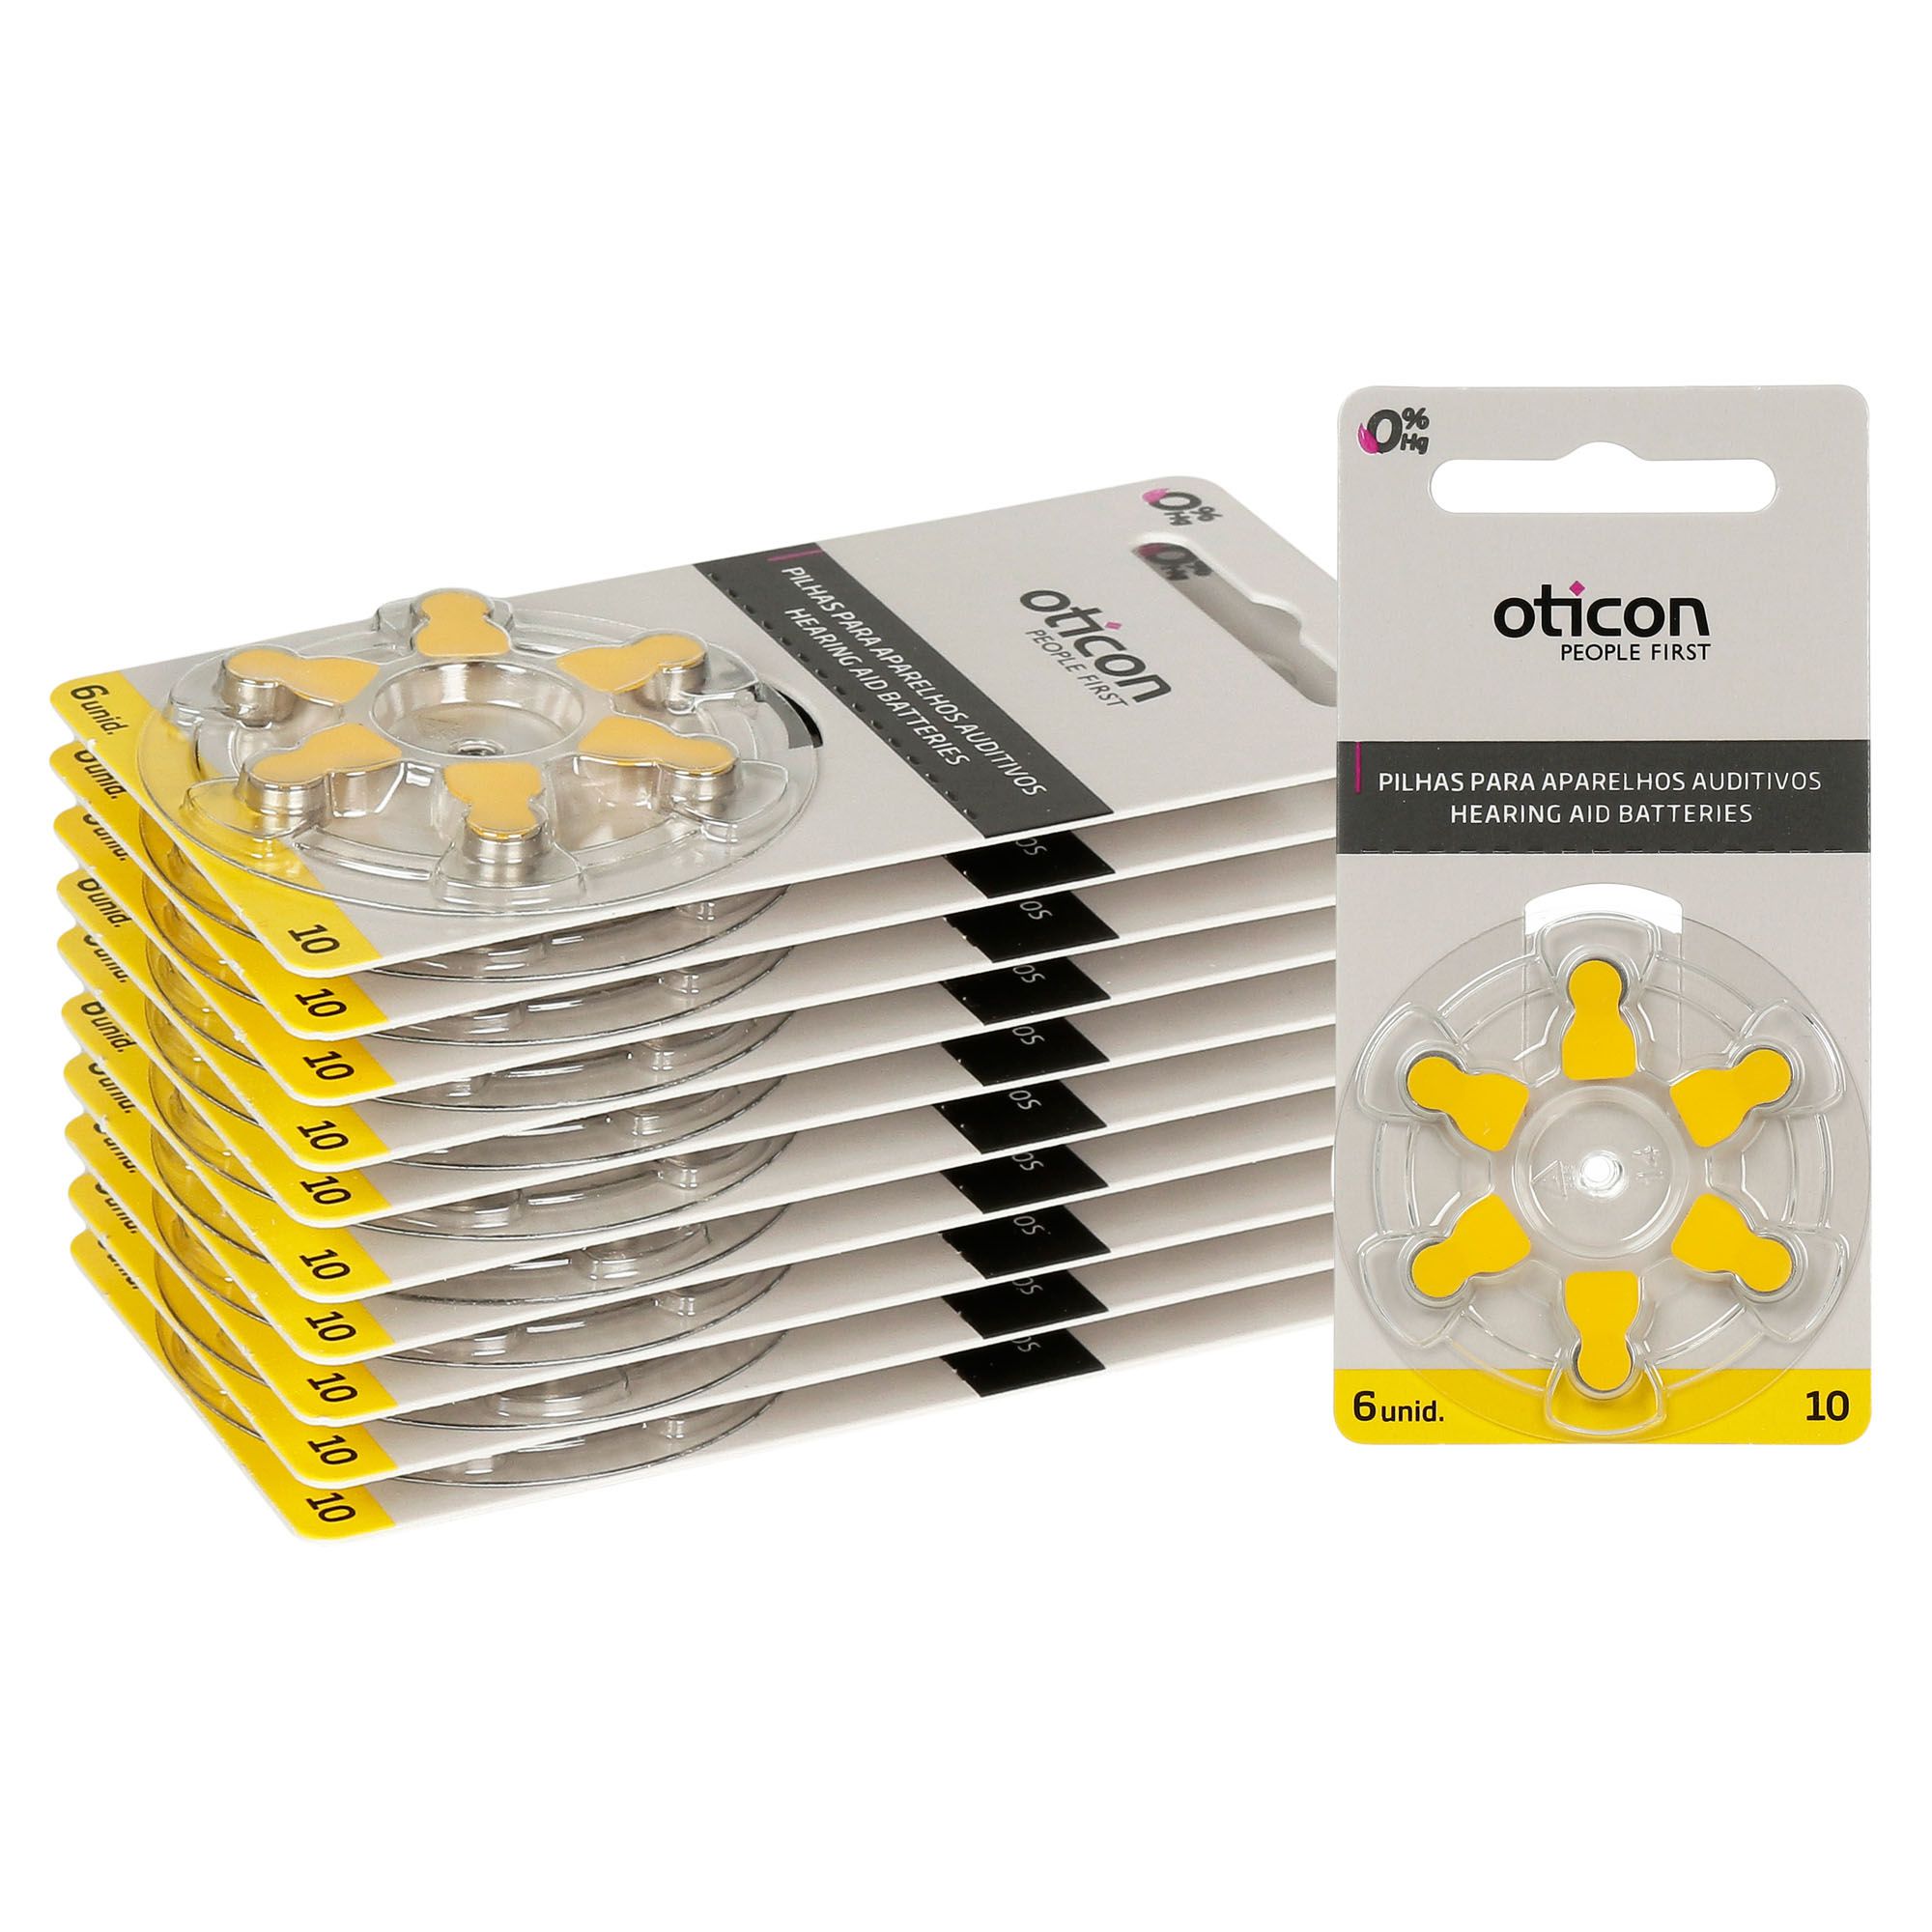 OTICON 10 / PR70 - 10 Cartelas - 60 Baterias para Aparelho Auditivo - SONORA